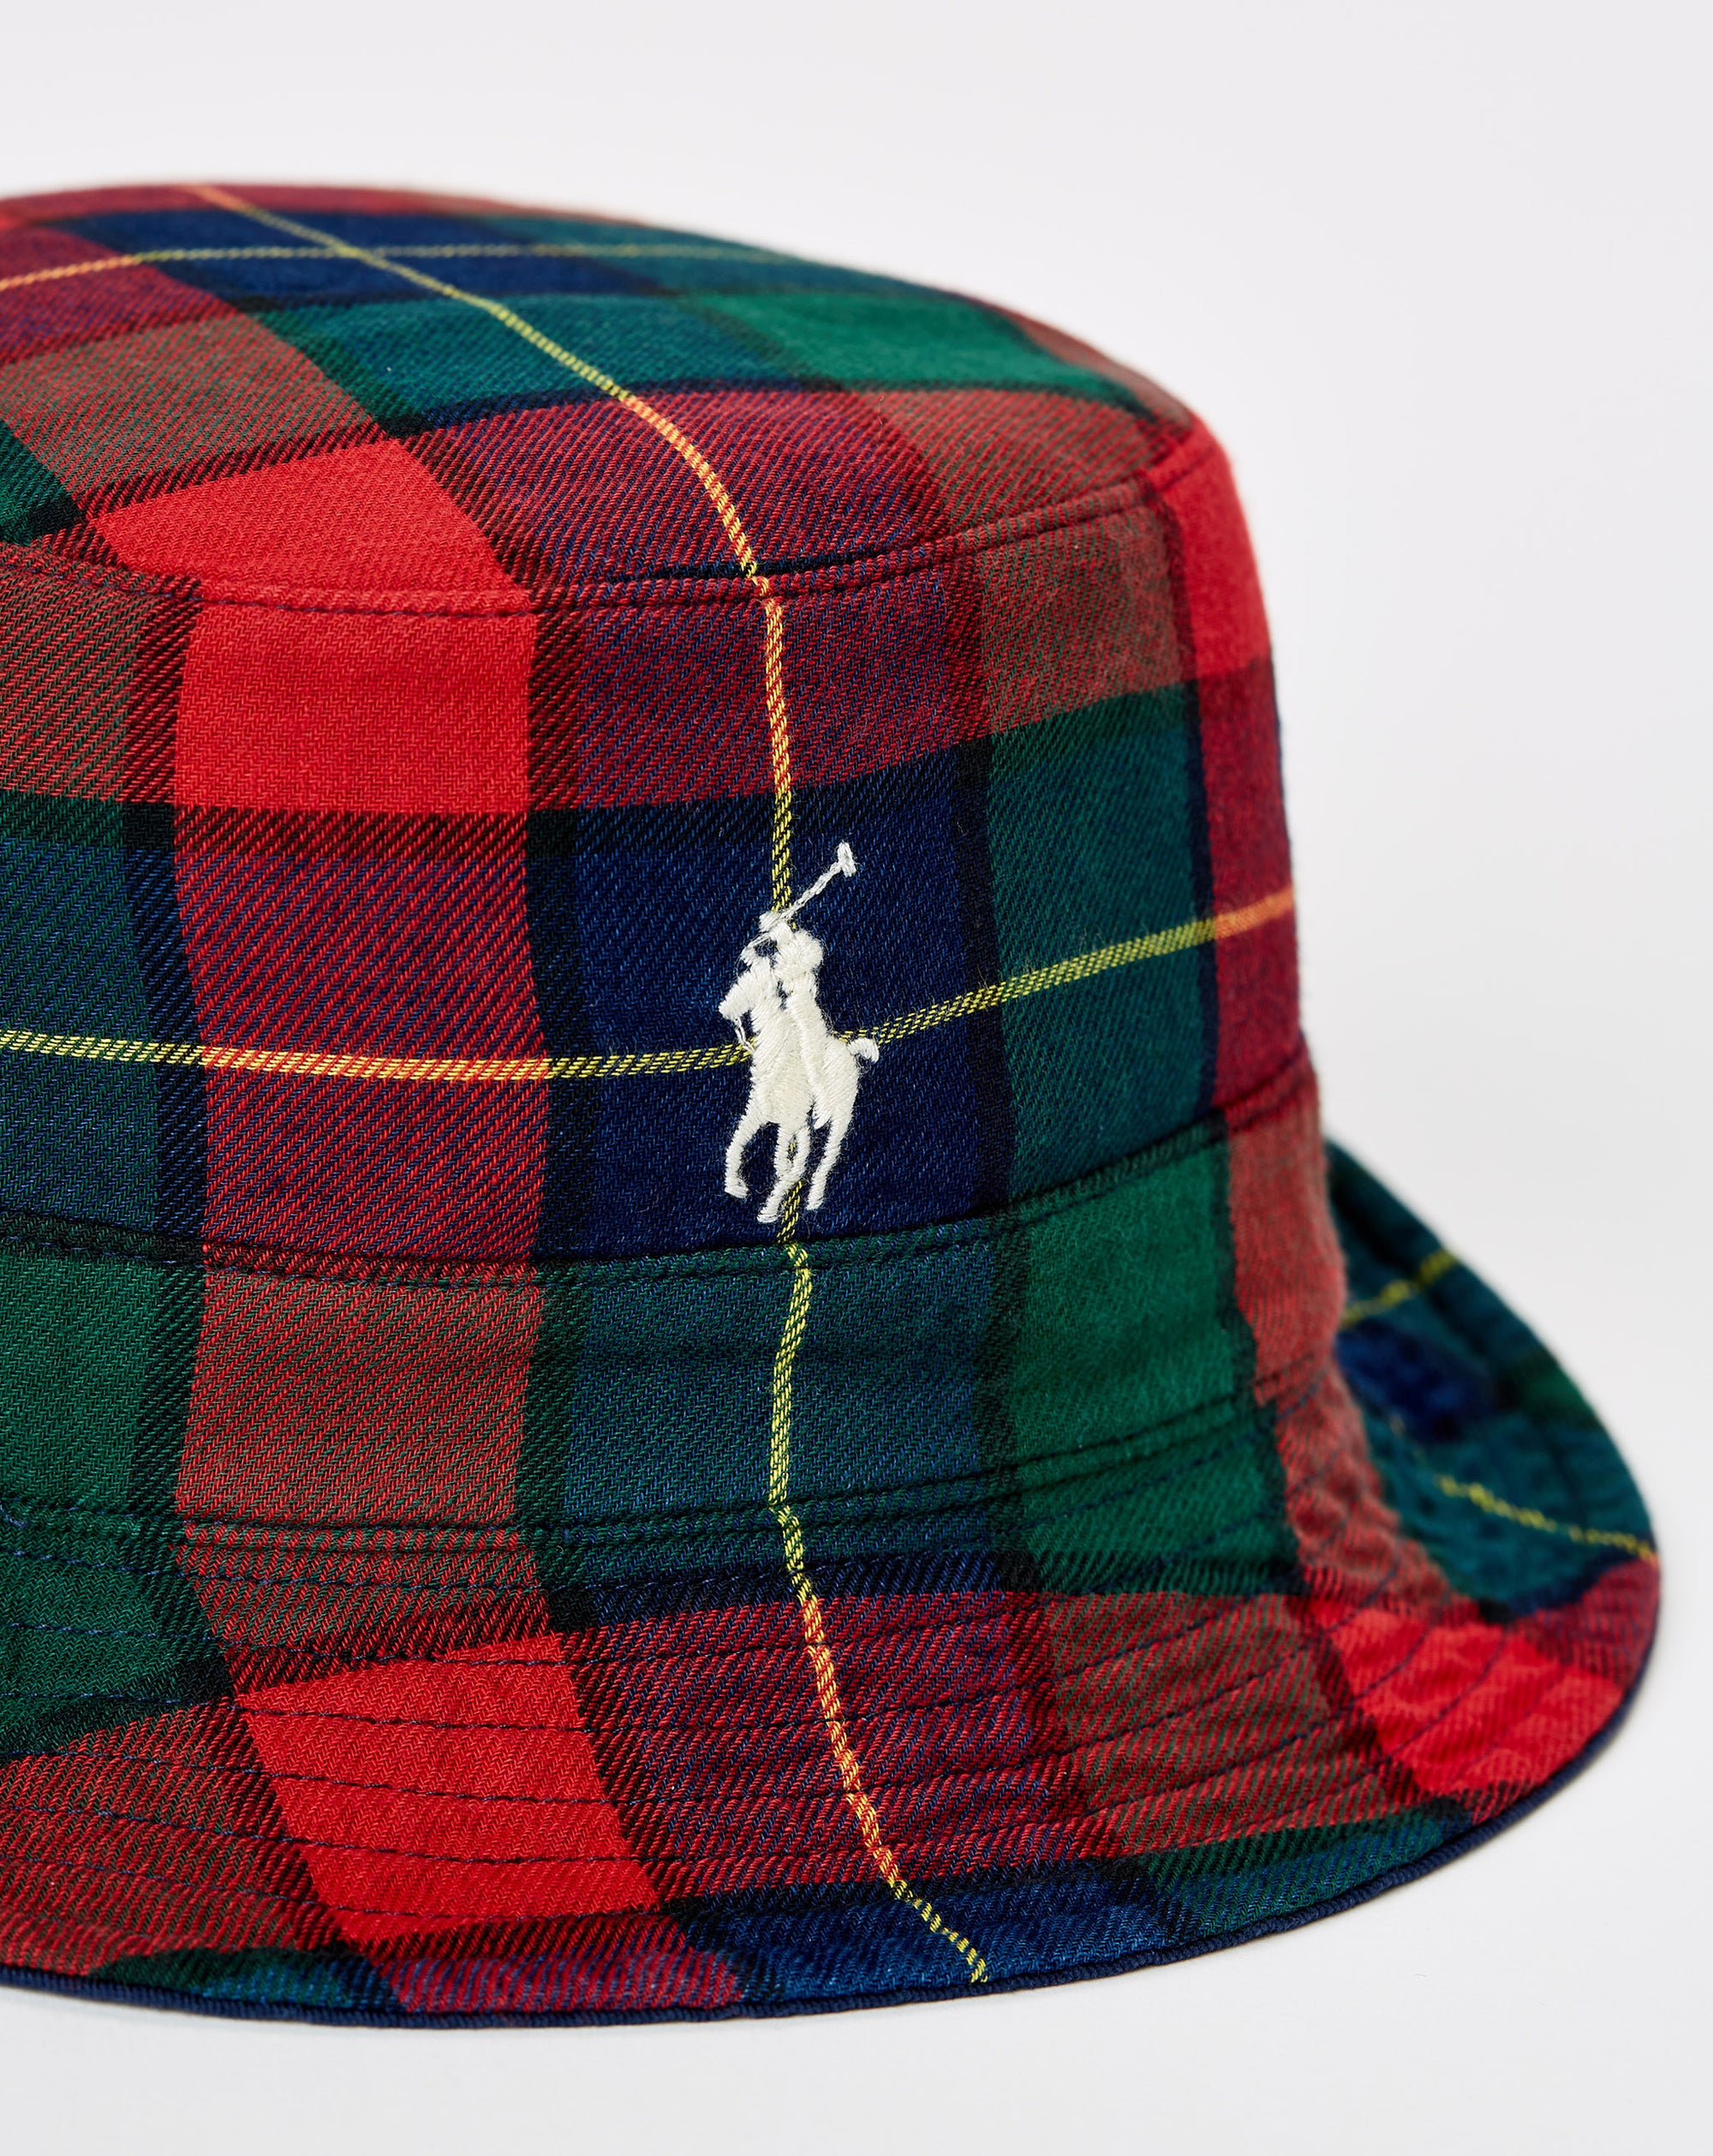 Polo Ralph Lauren Reversible Bucket Hat - Rule of Next Accessories